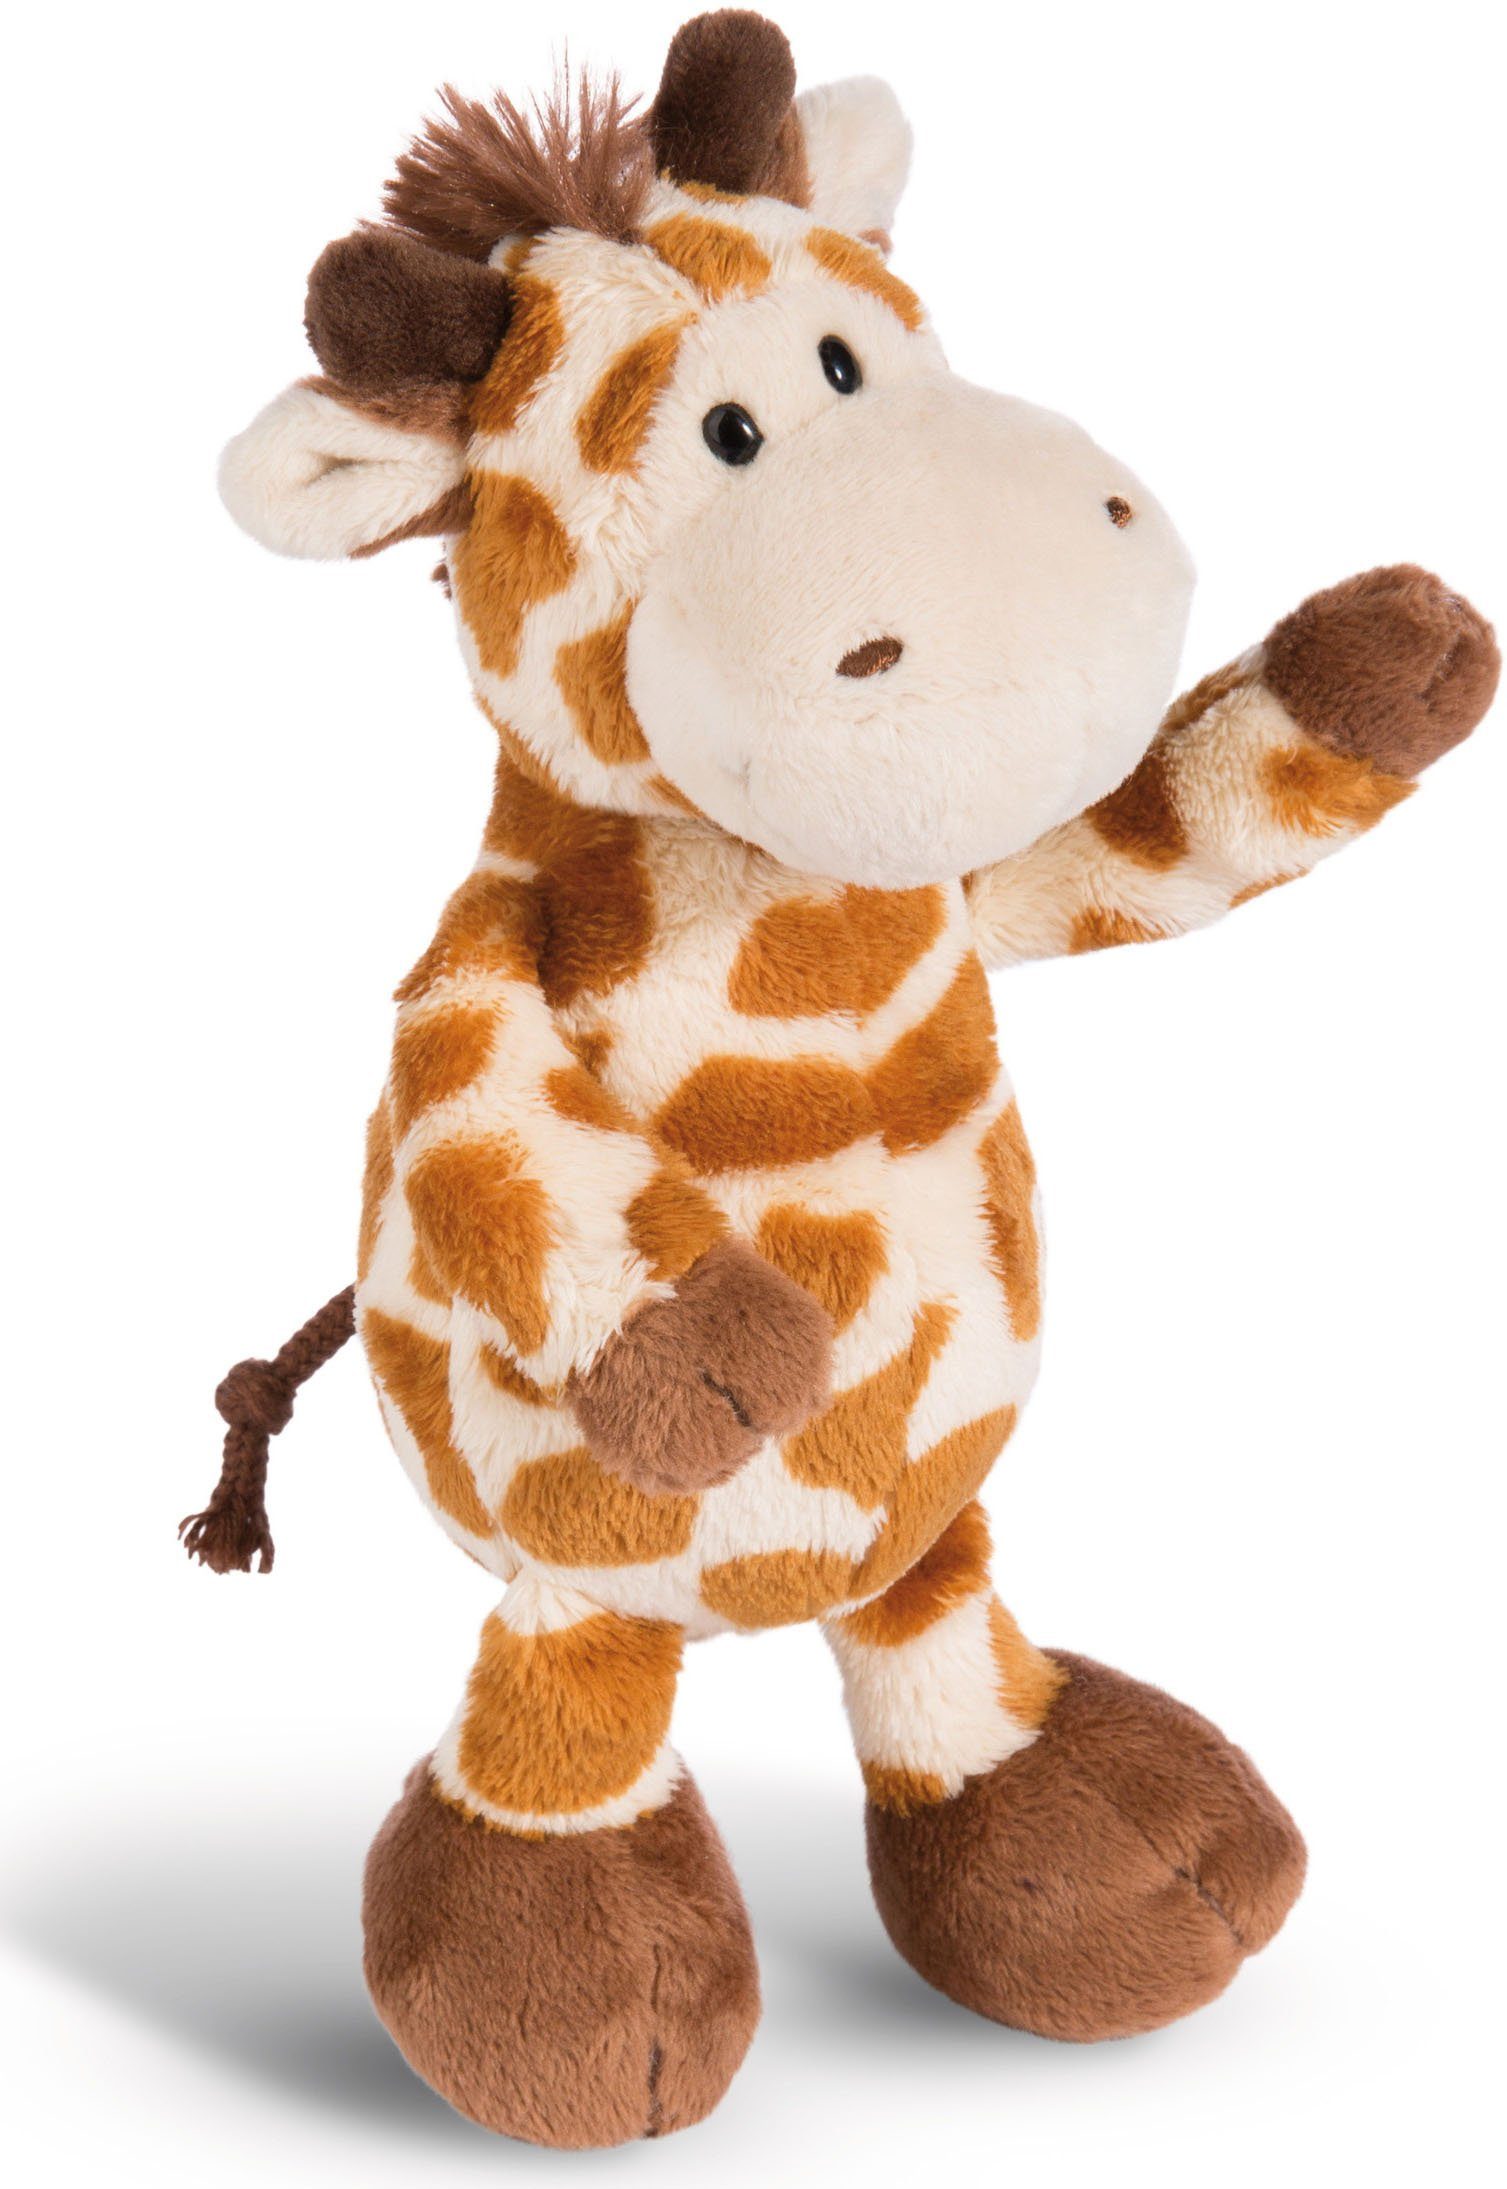 Weicher Plüsch Zoo Tier Figur Handpuppe Handschuh Kinder Spielzeug Giraffe 